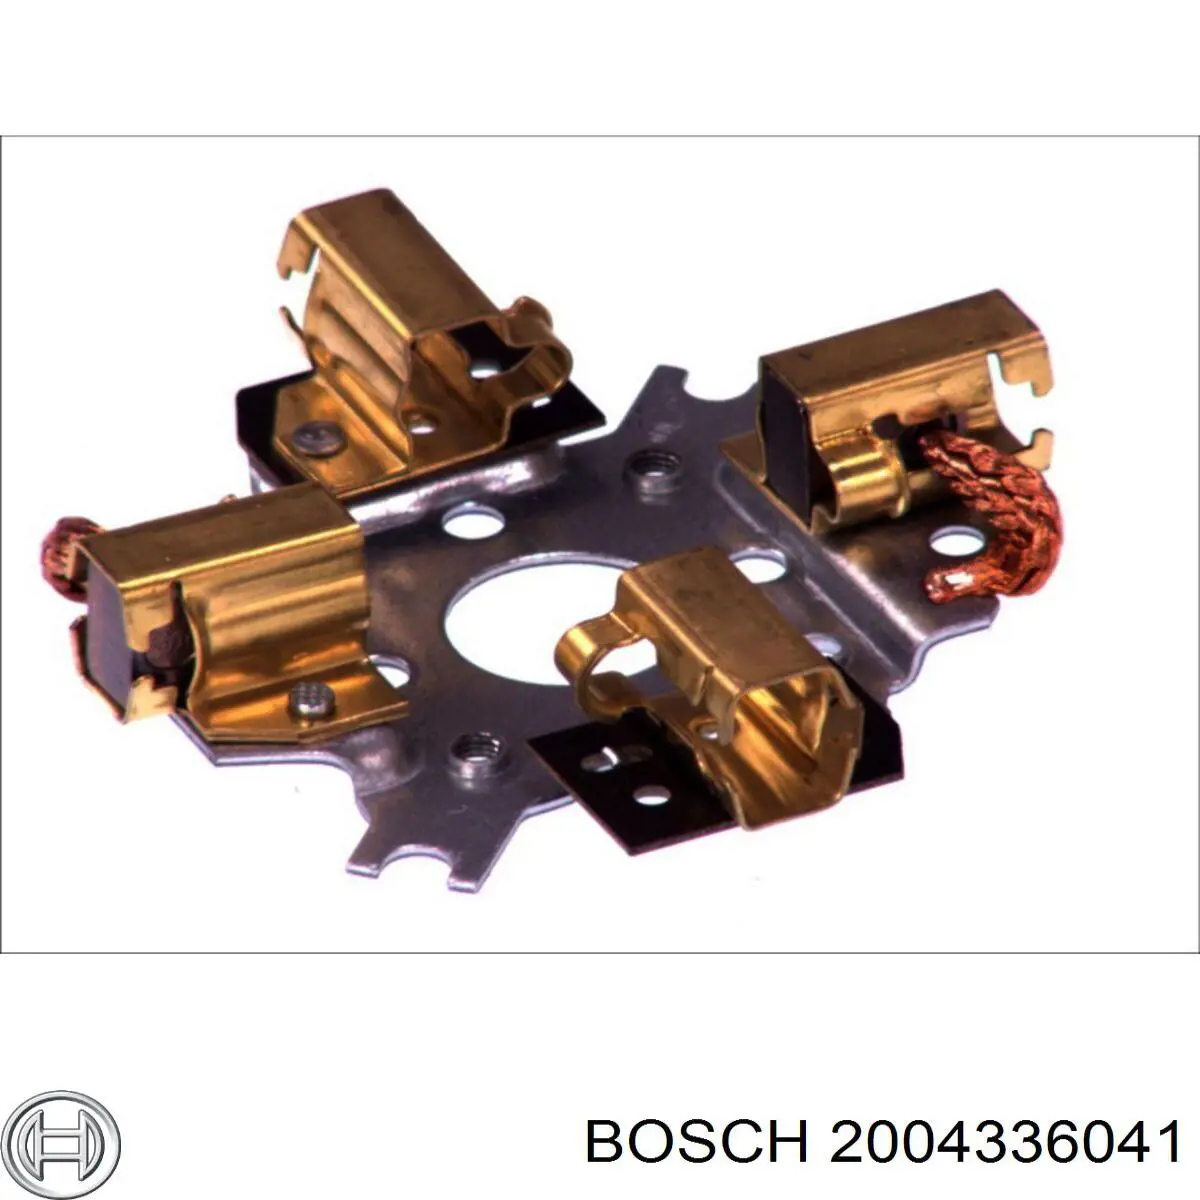 2004336041 Bosch щеткодеpжатель стартера